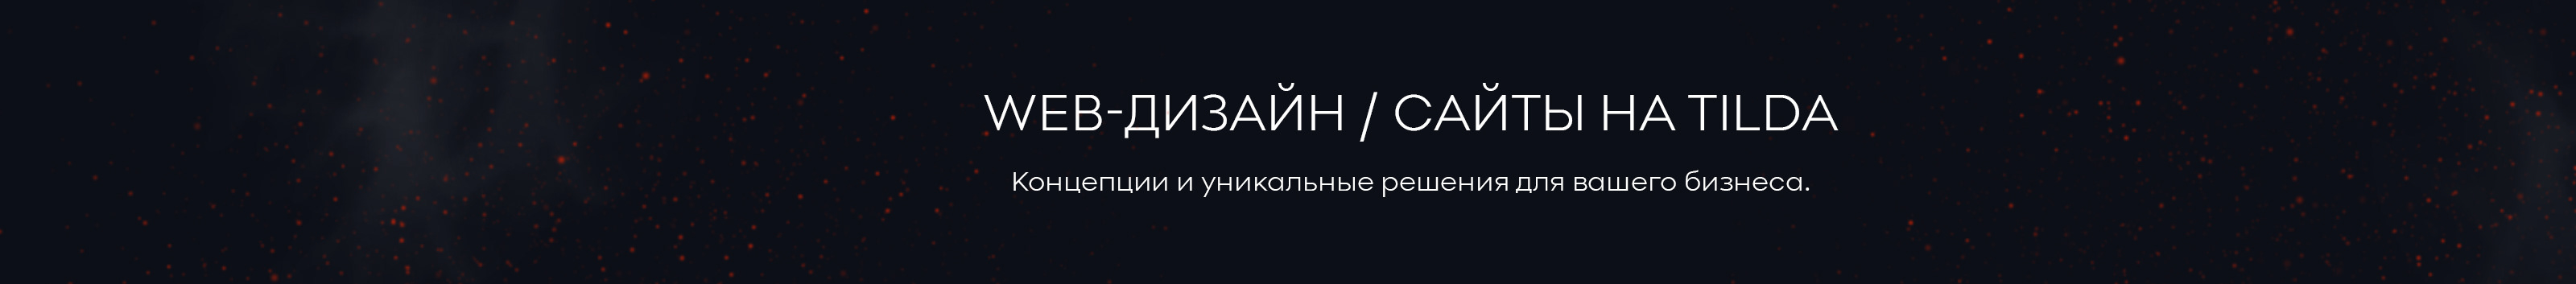 Tatiana Lysova's profile banner